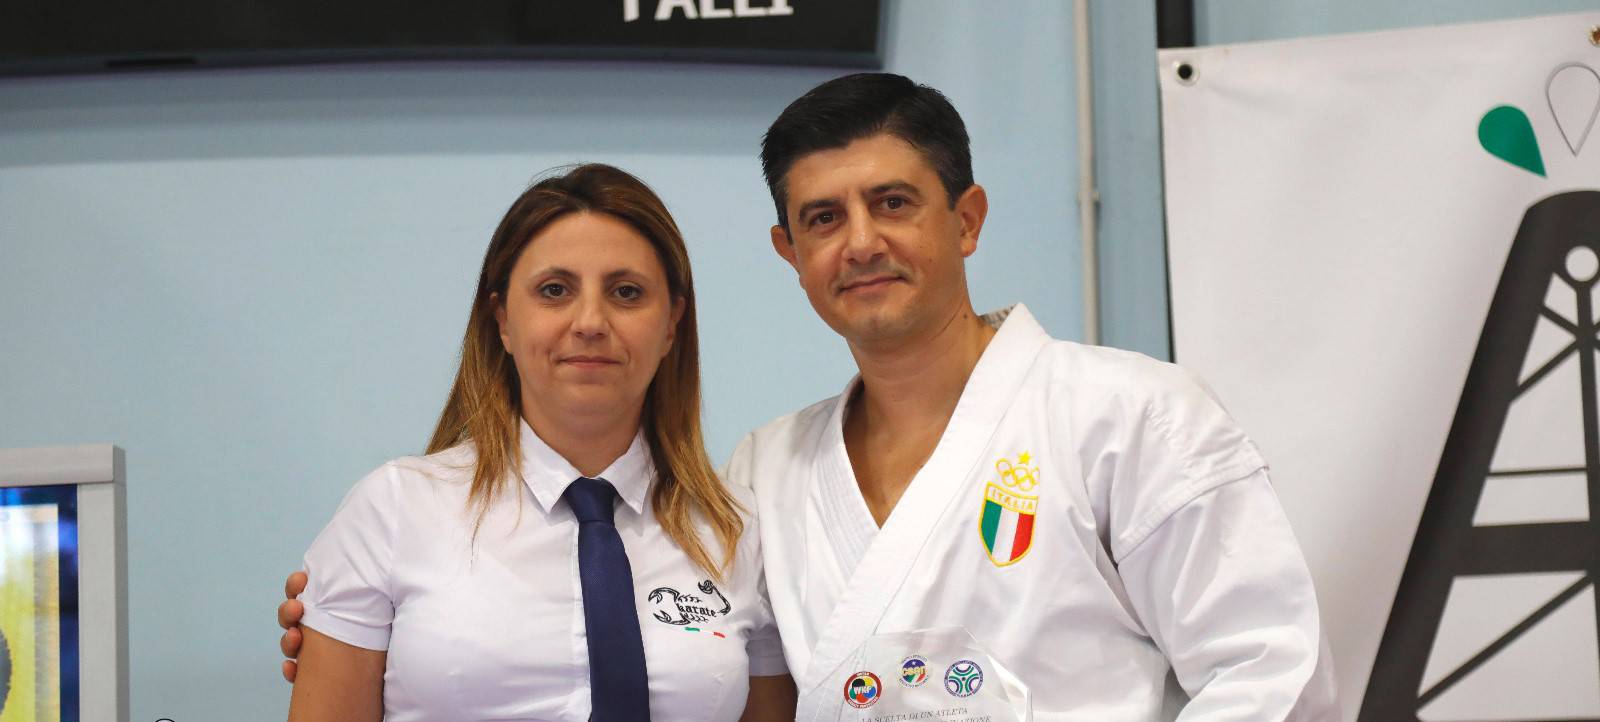 Skorpion Karate, 200 partecipanti a scuola della disciplina, tra gli ospiti Lucio Maurino e i giovani campioni della Nazionale